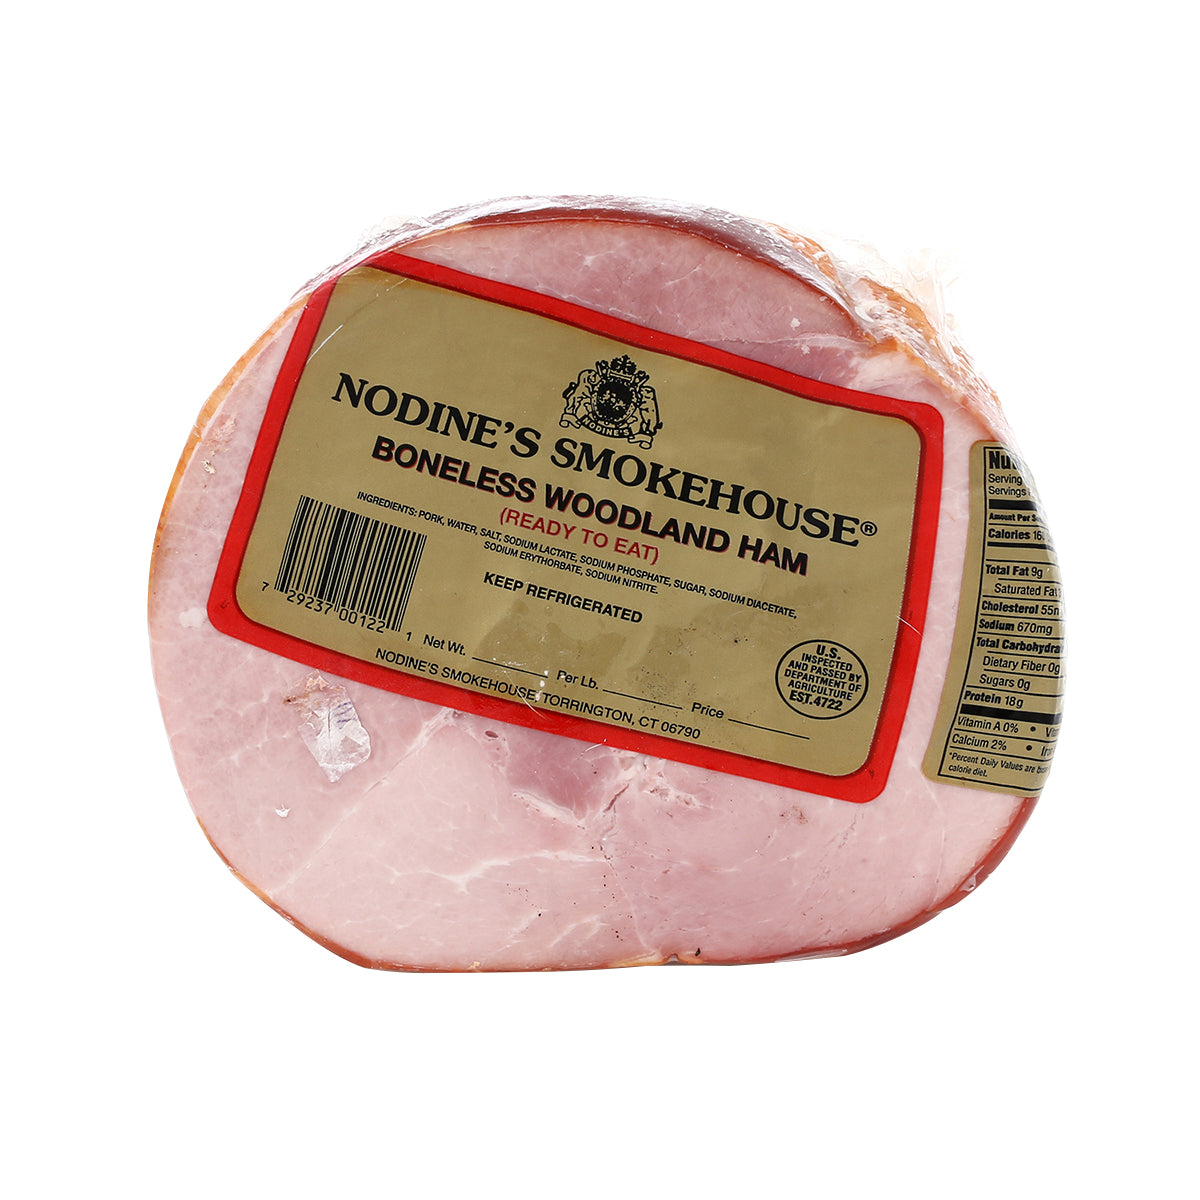 Nodine'S Smokehouse Boneless Woodland Ham